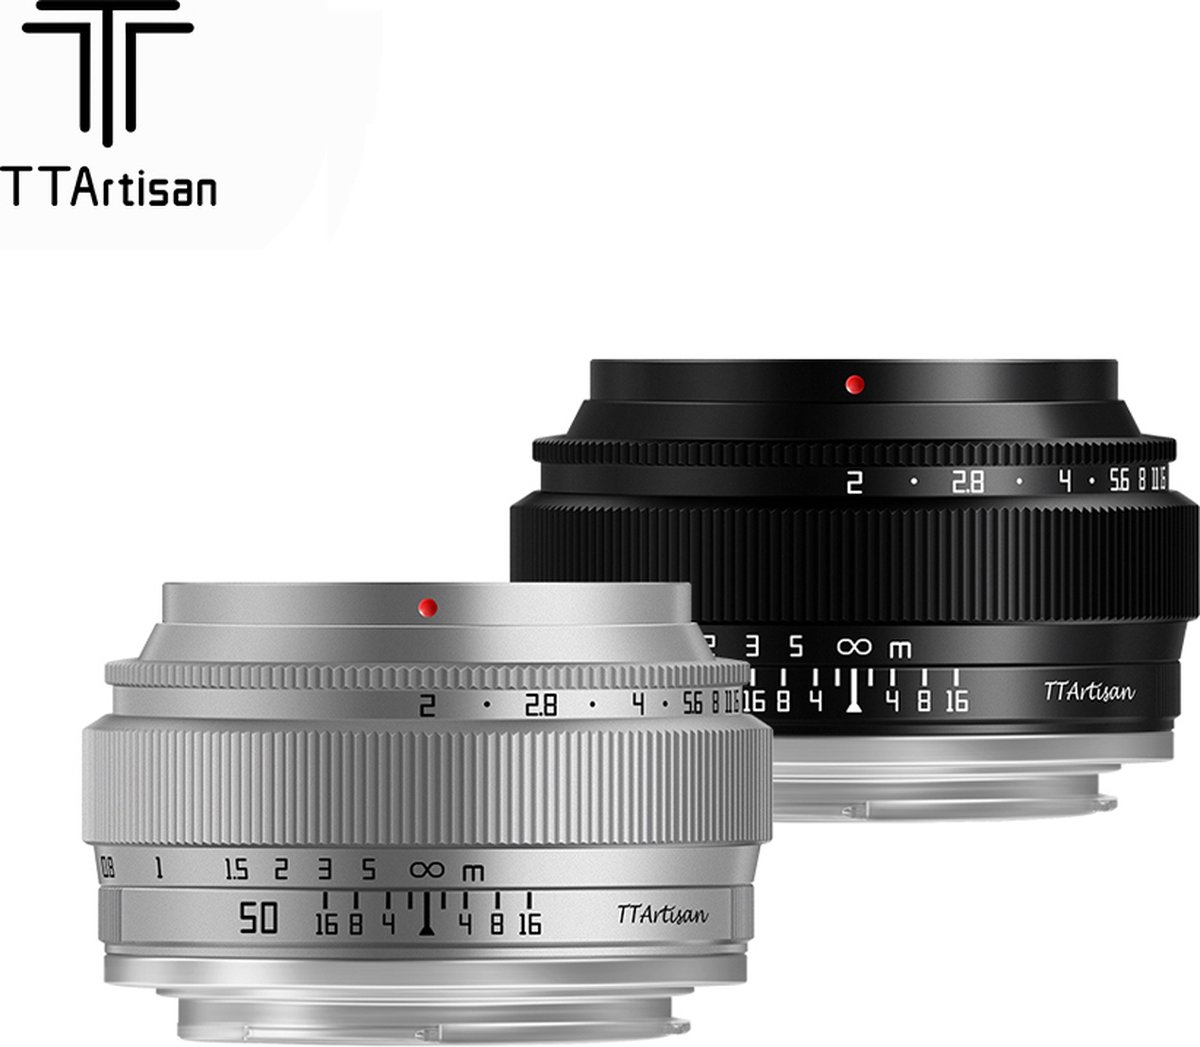 TT Artisan - Cameralens - 50mm F/2.0 Full Frame voor MFT camera's, zilver